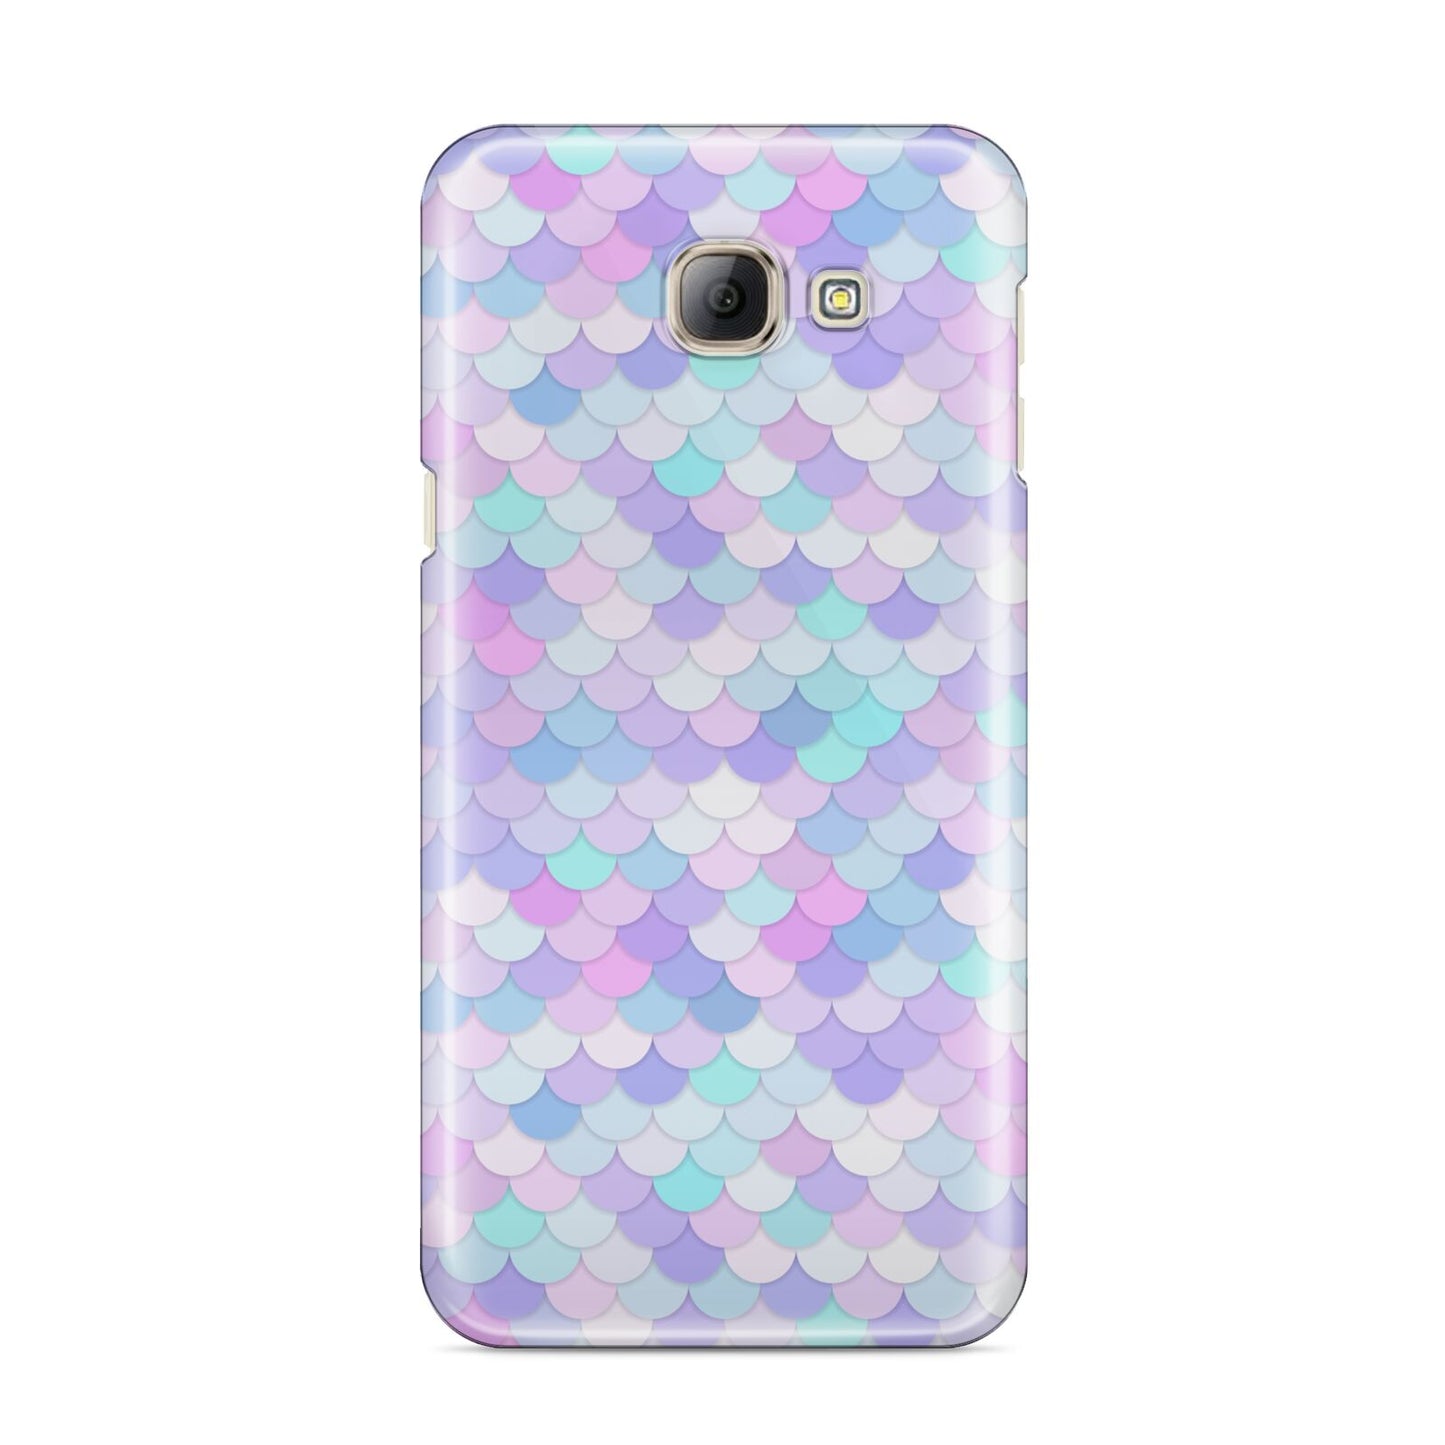 Mermaid Samsung Galaxy A8 2016 Case